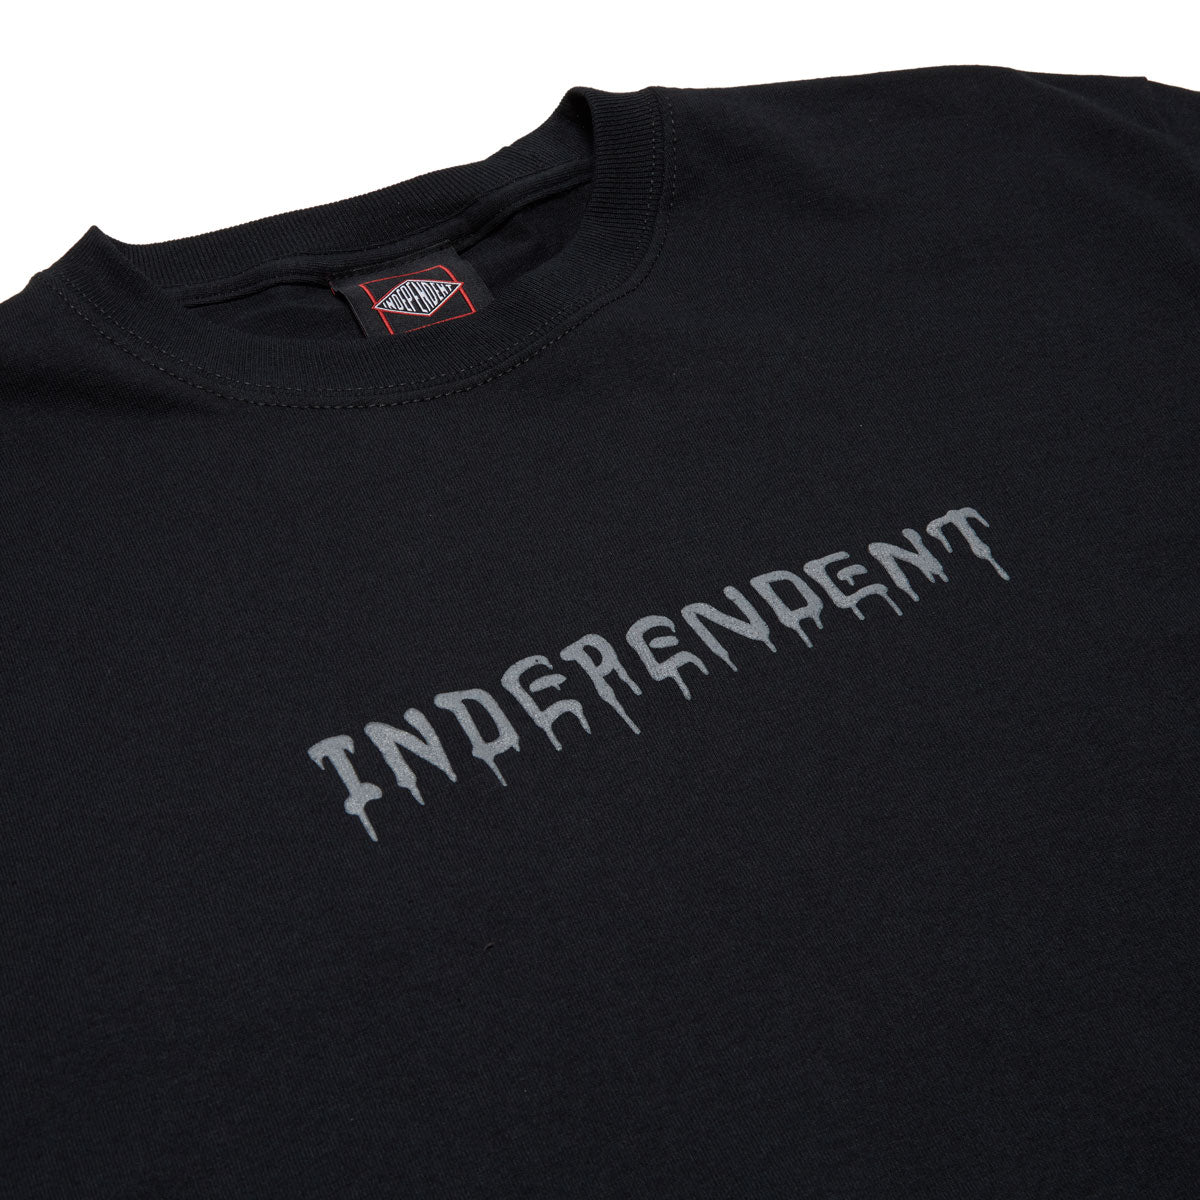 Independent Vandal T-Shirt - Black image 2